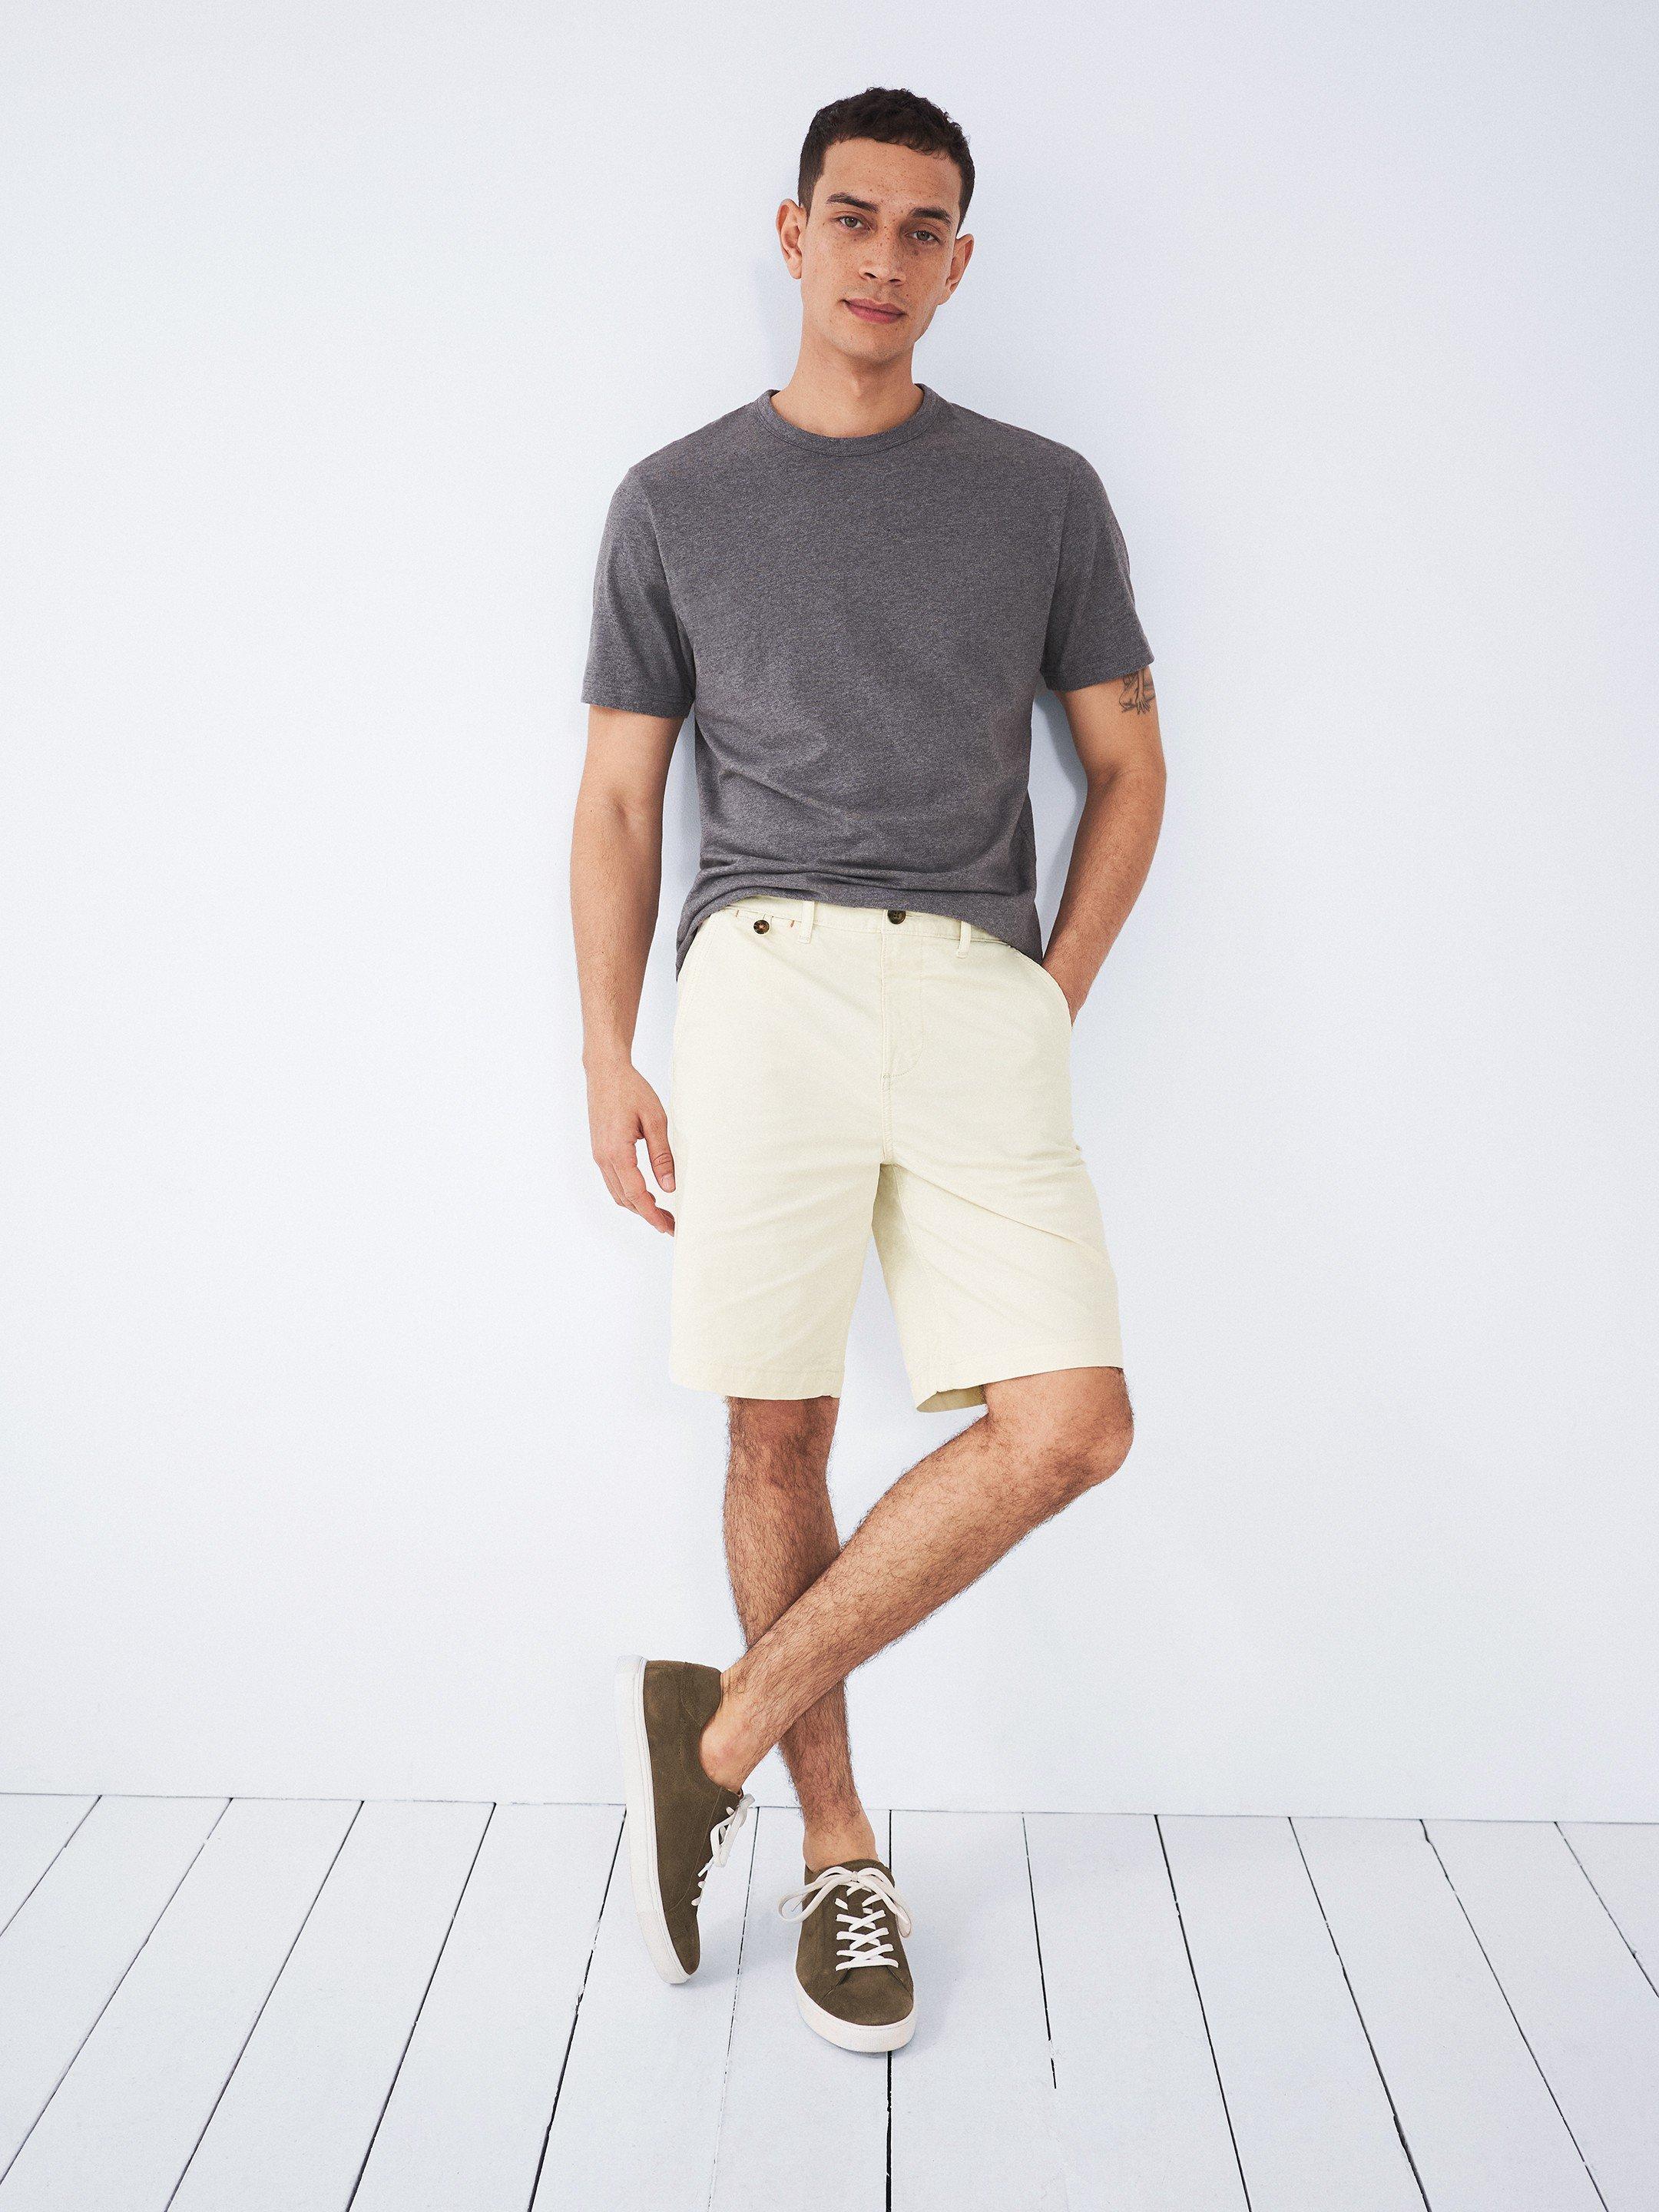 Sutton Organic Chino Shorts